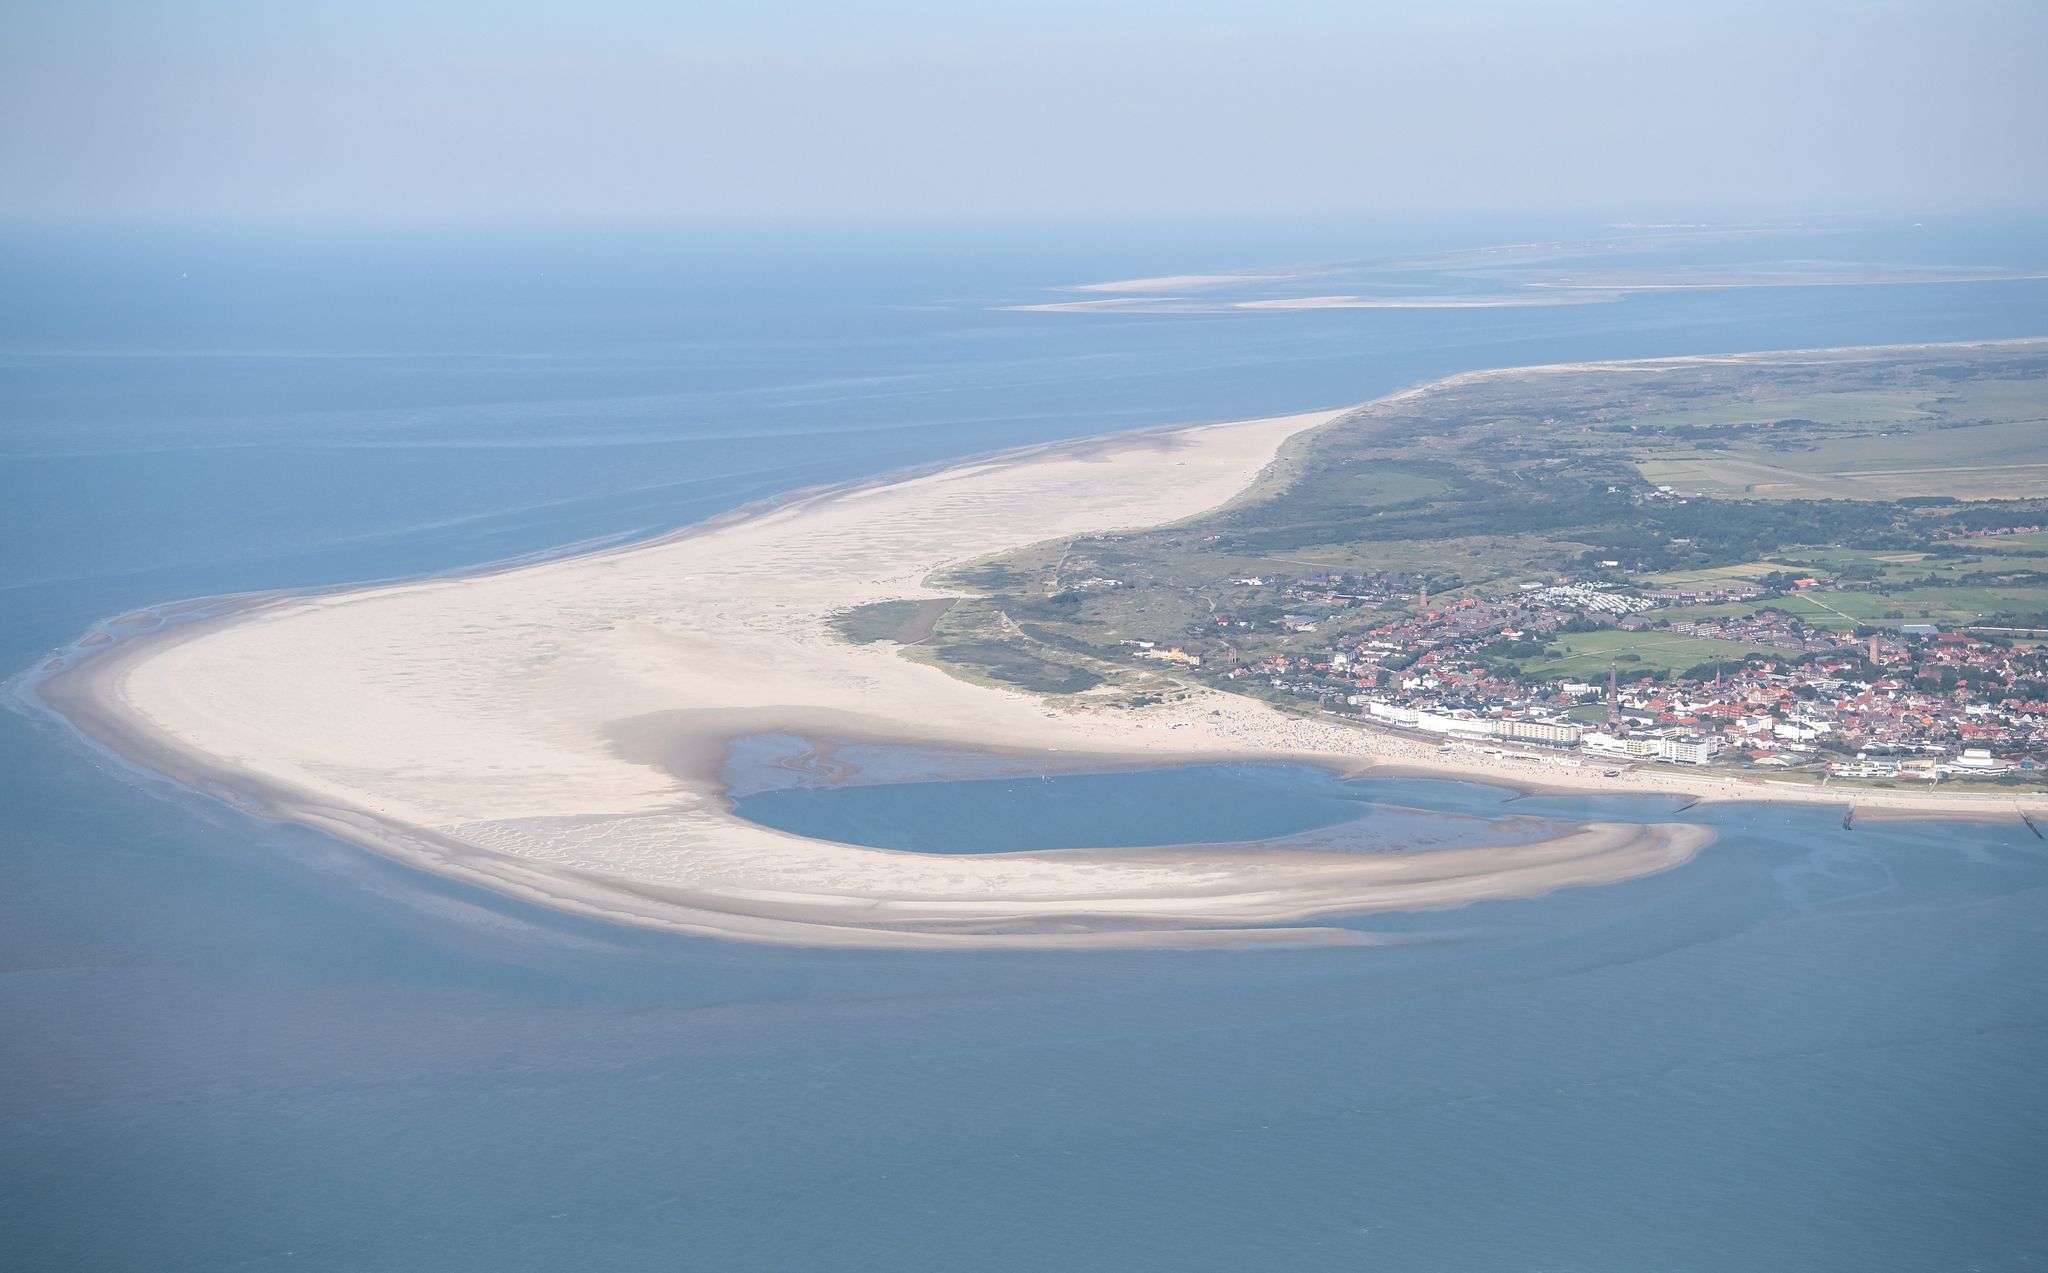 Die ostfriesische Insel Borkum in der Nordsee, vor der die Förderung von Erdgas geplant wird.